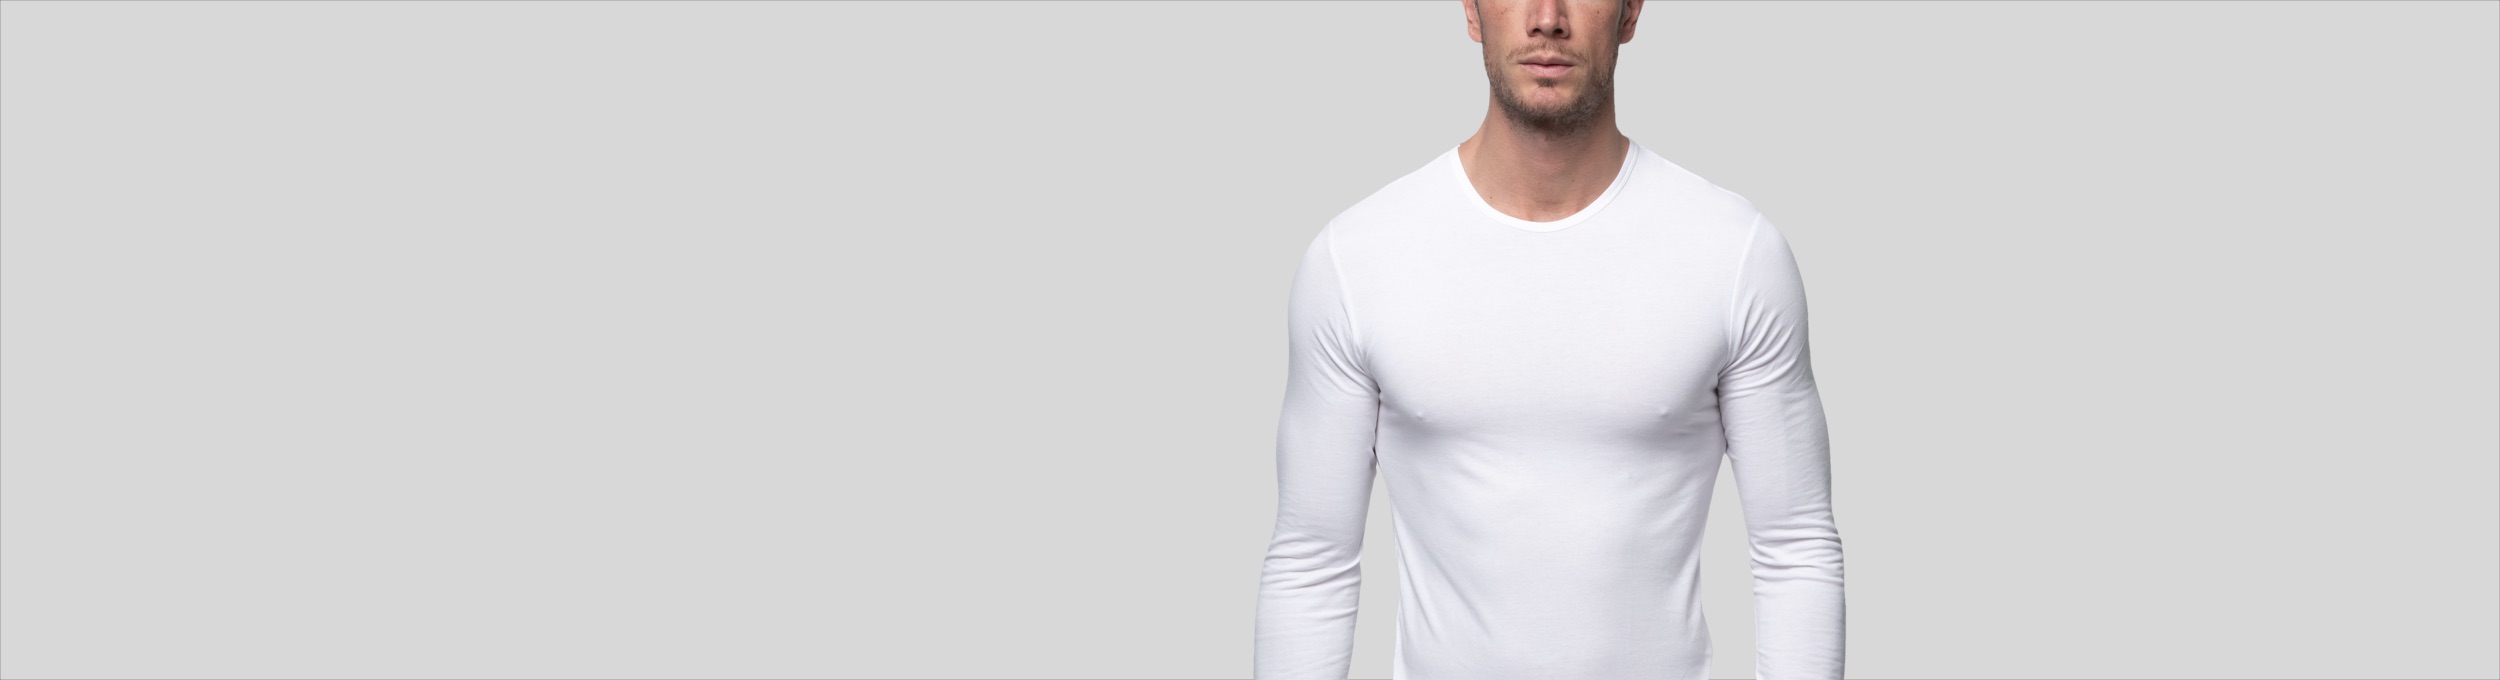 Camiseta interior térmica de hombre en color blanco de manga corta ·  Abanderado · El Corte Inglés